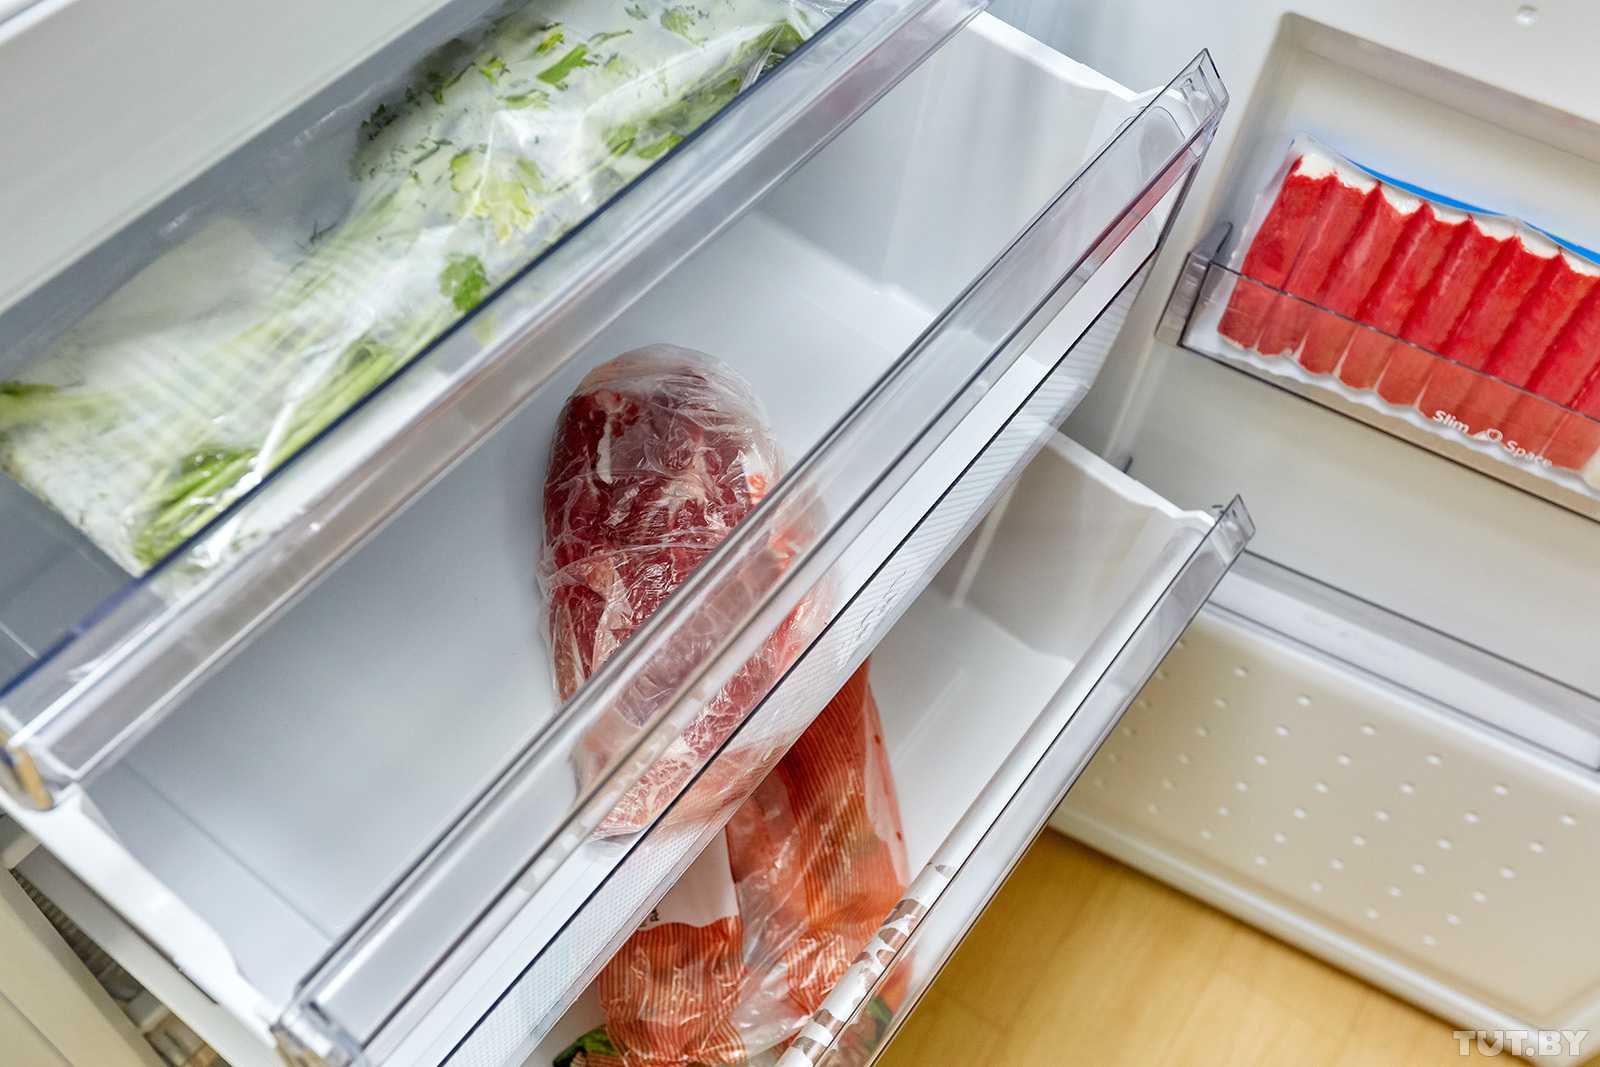 Заморозка в морозильной. Хранение мяса в холодильнике. Хранение продуктов в морозилке. Холодильник с продуктами. Холодильник для заморозки.